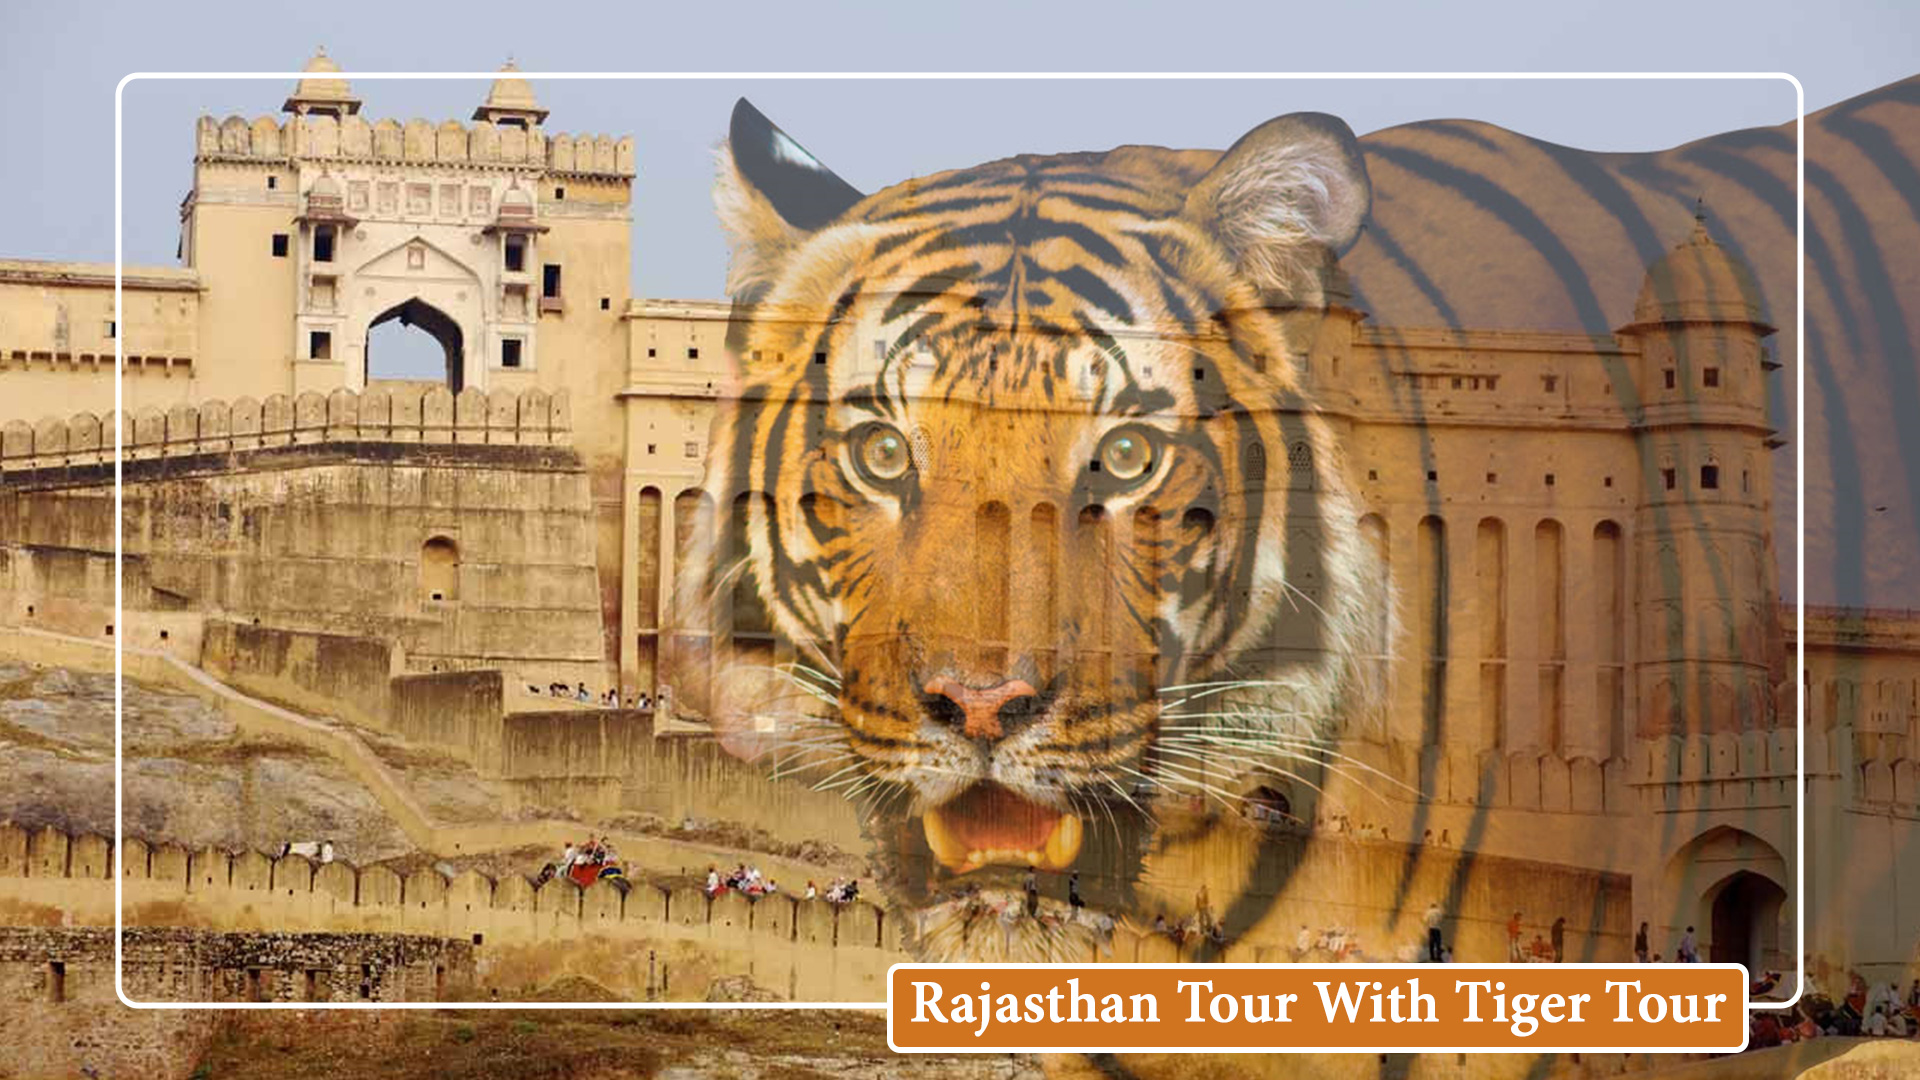 Rajasthan Wildlife Tiger Tour Package